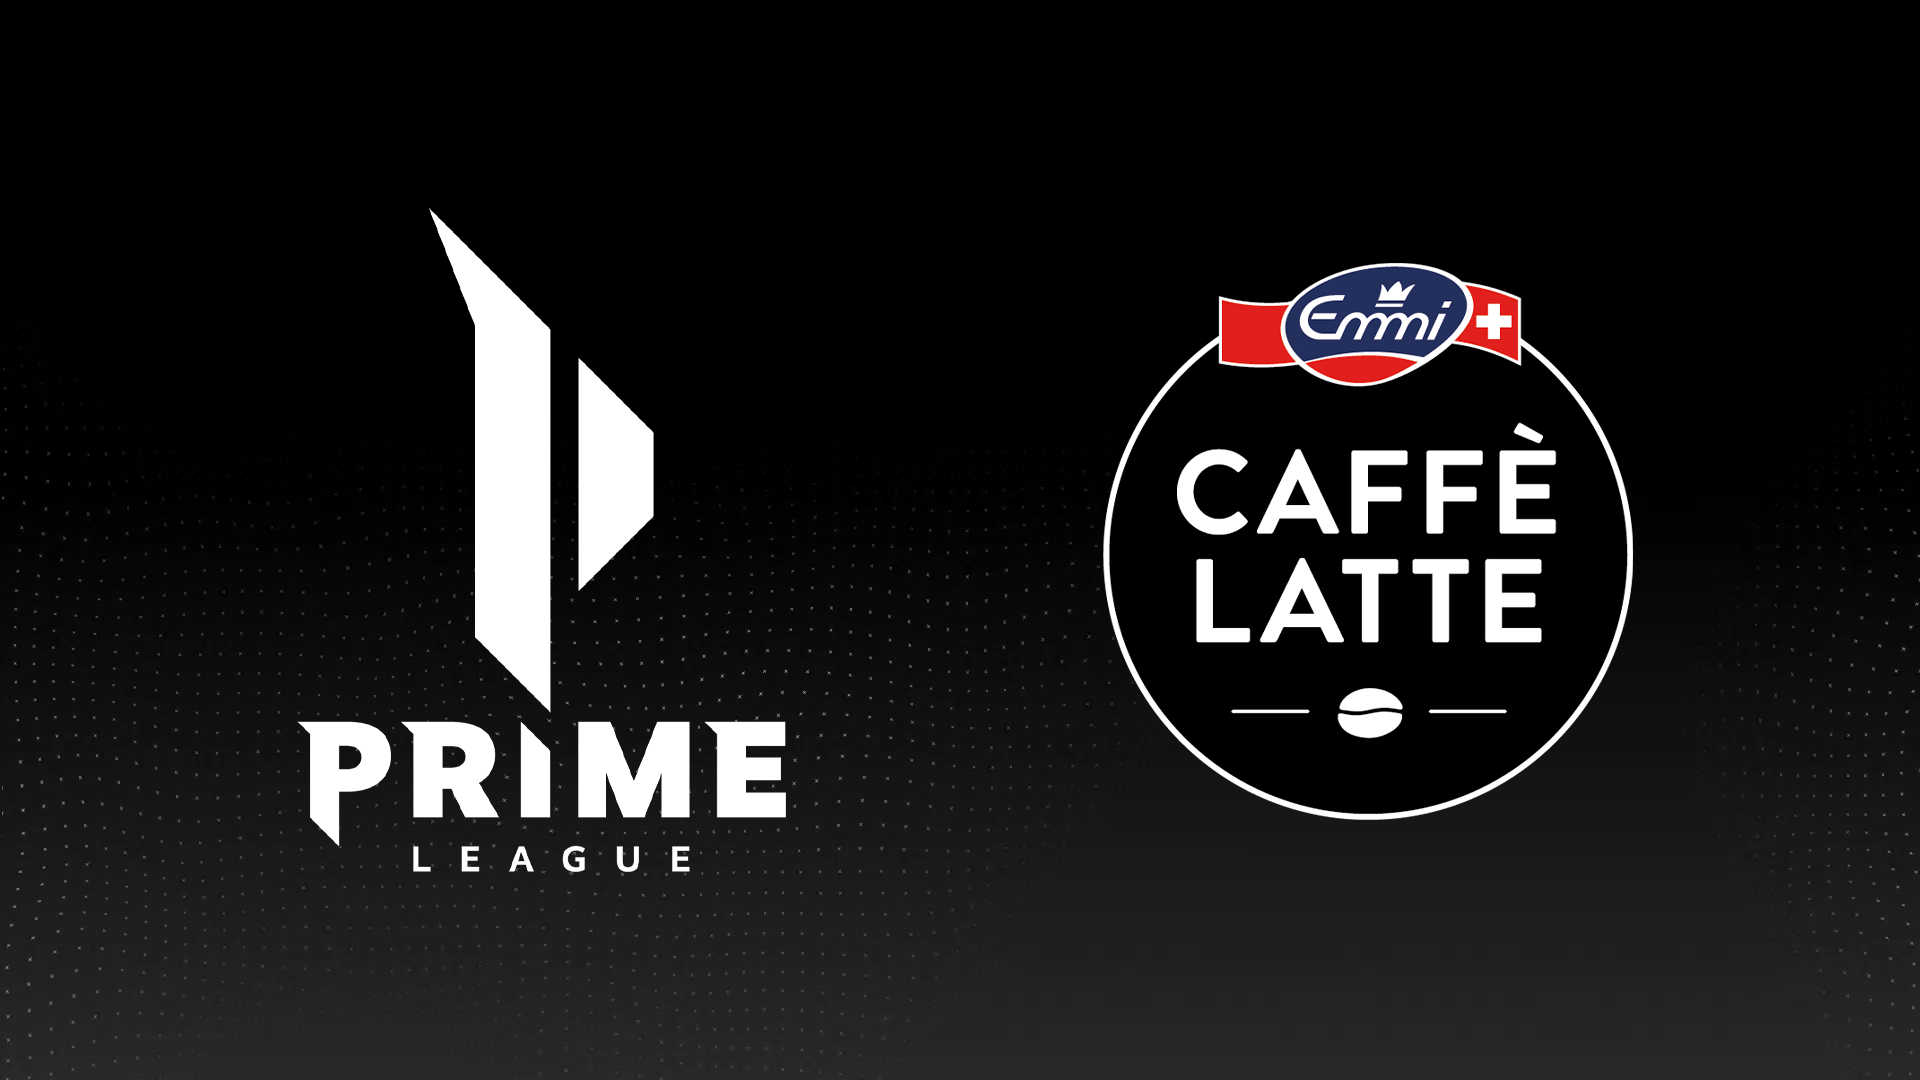 Die Logos der Strauss Prime League und Emmi Caffè Latte